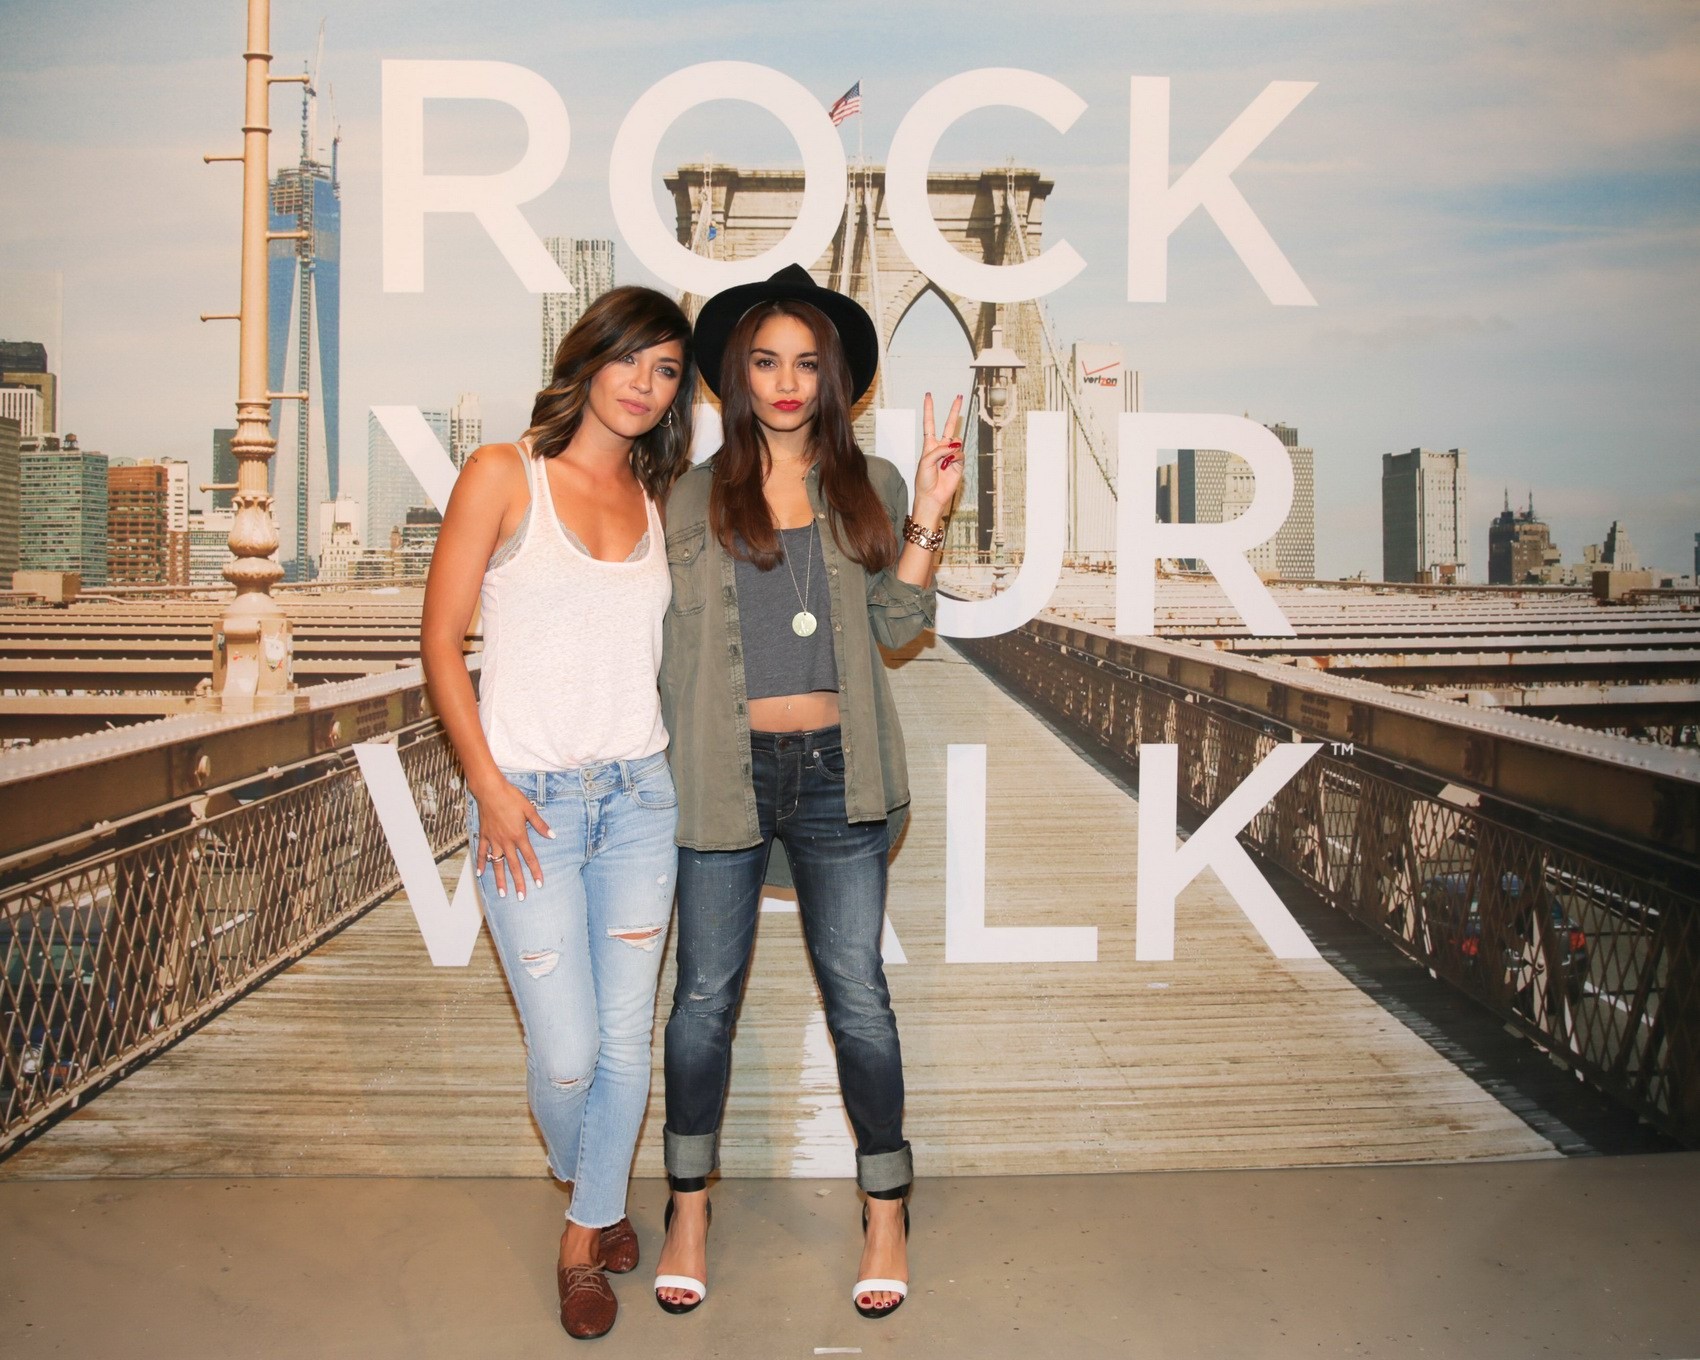 Jessica szohr e vanessa hudgens che si divertono all'evento rock your walk a new york
 #75222925